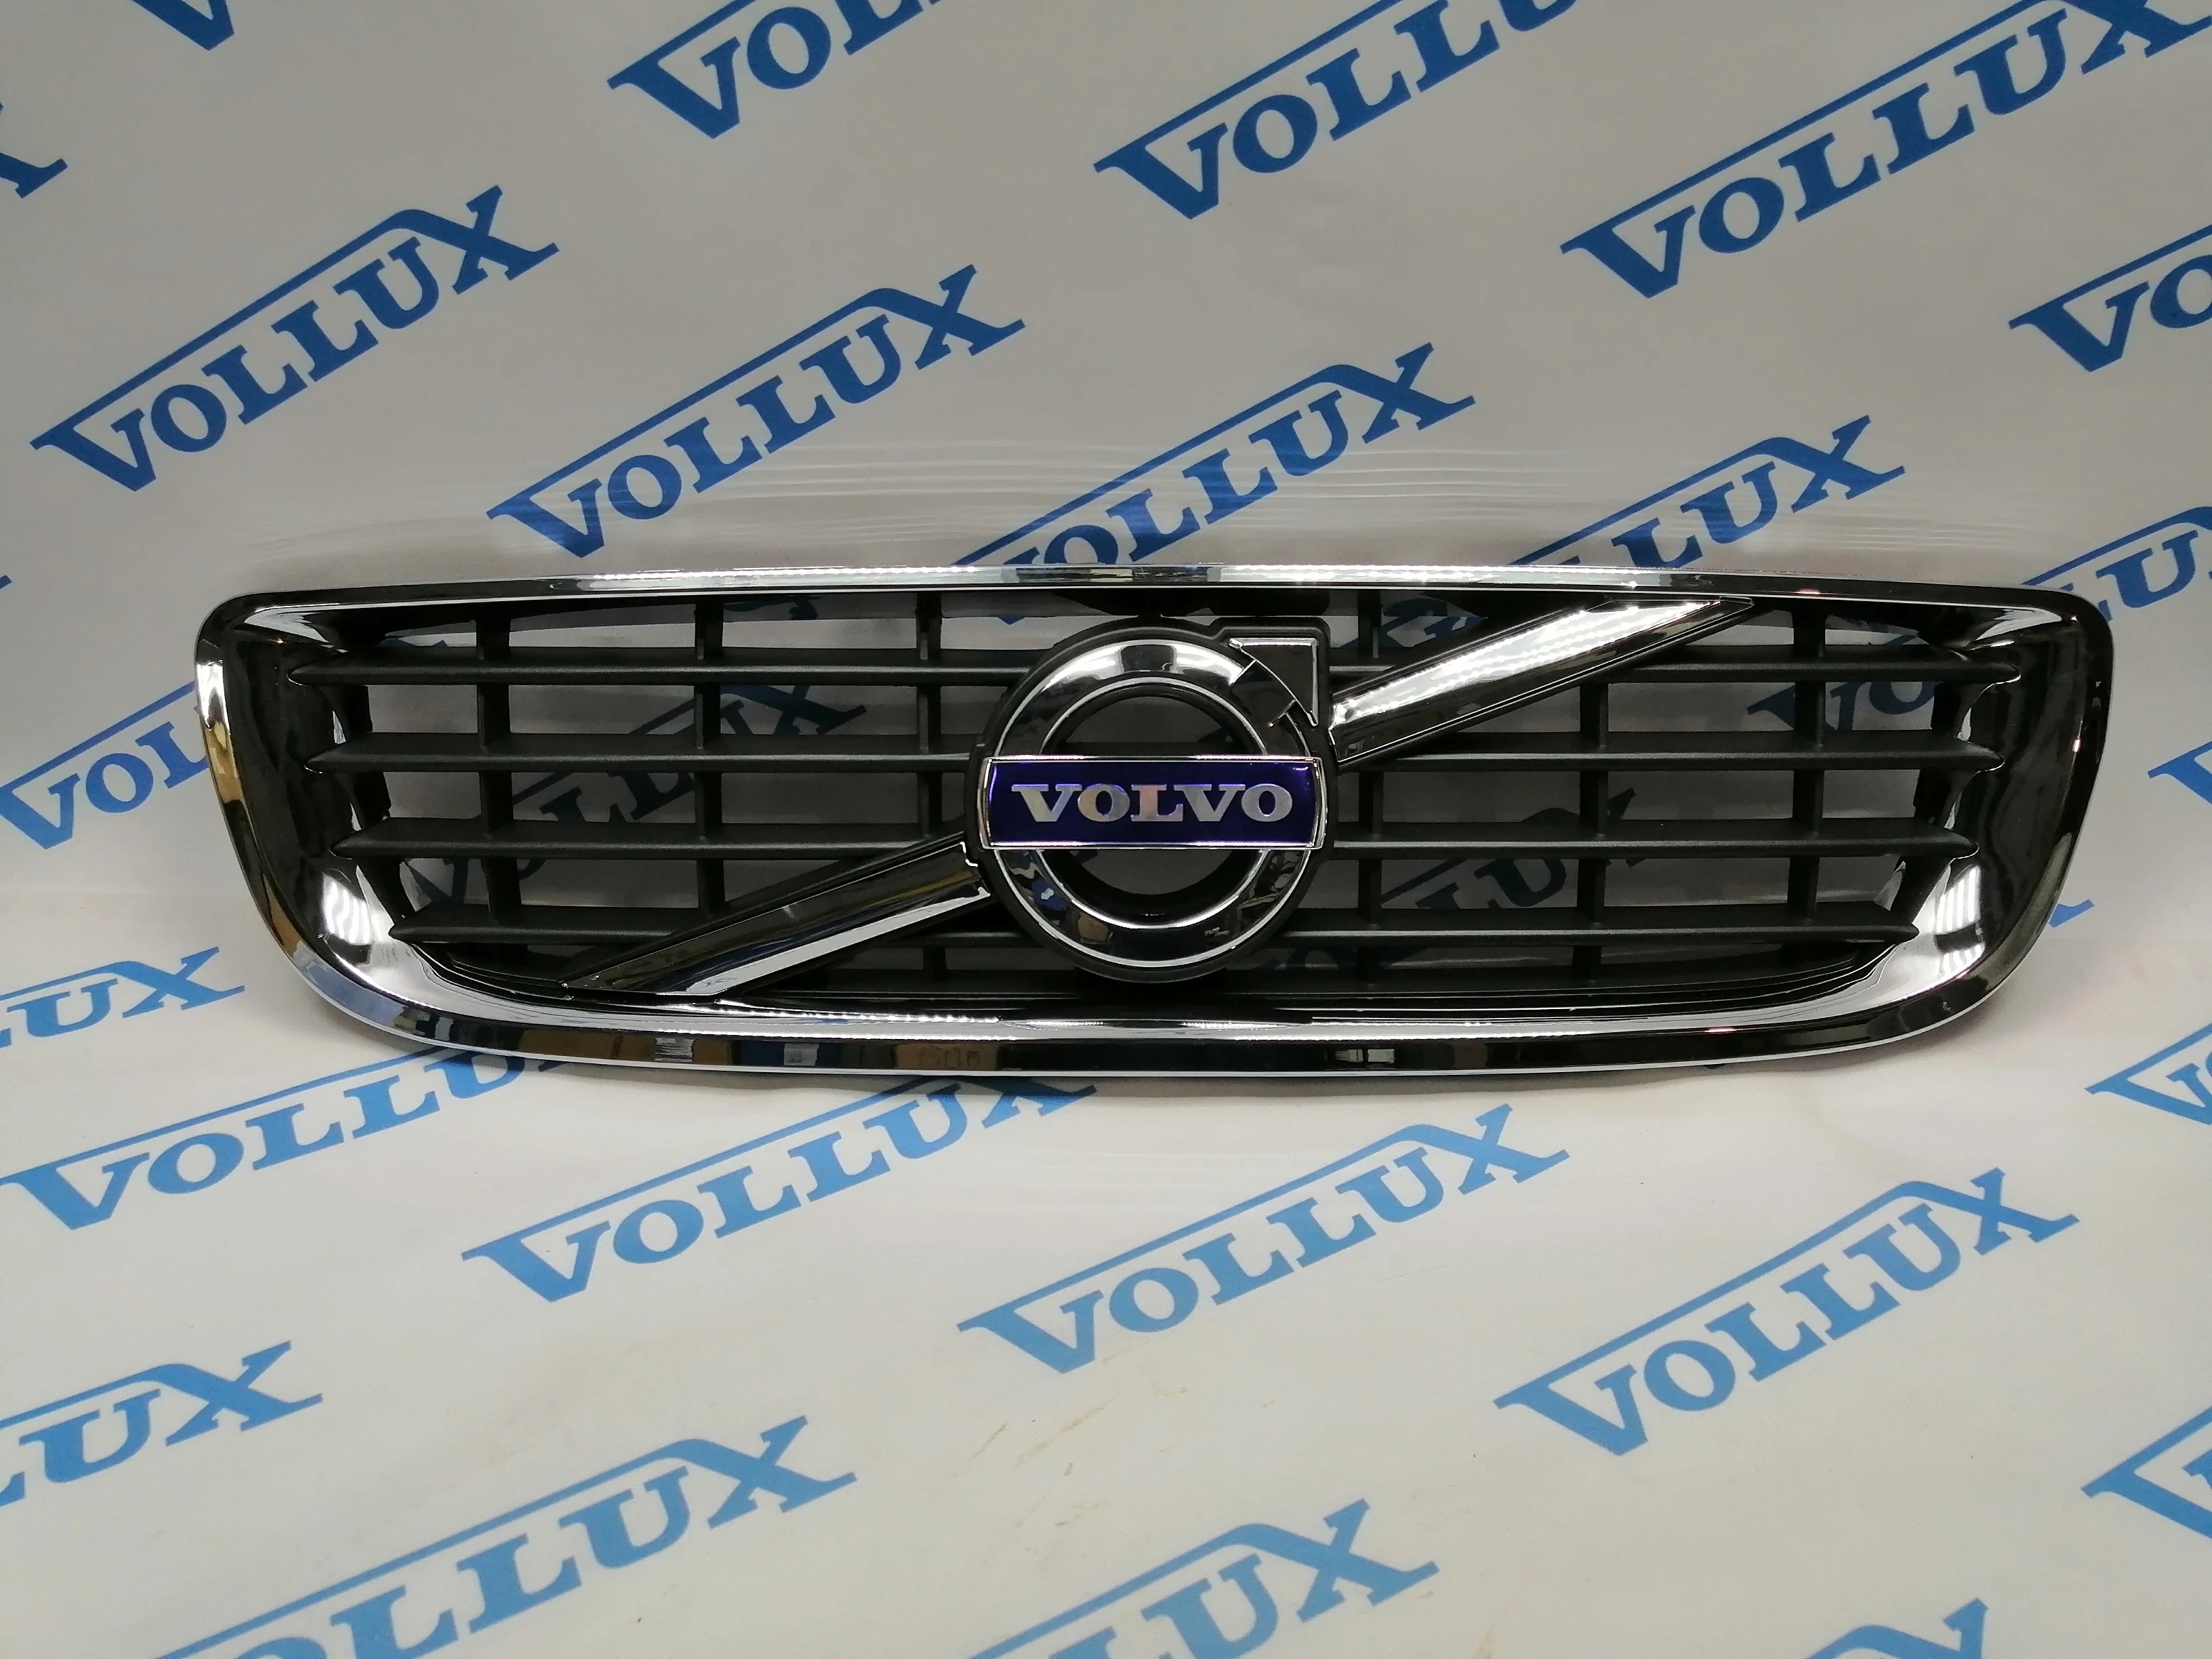 Vollux Решетка радиатора S40/V50 10-12 (в сборе с эмблемой)